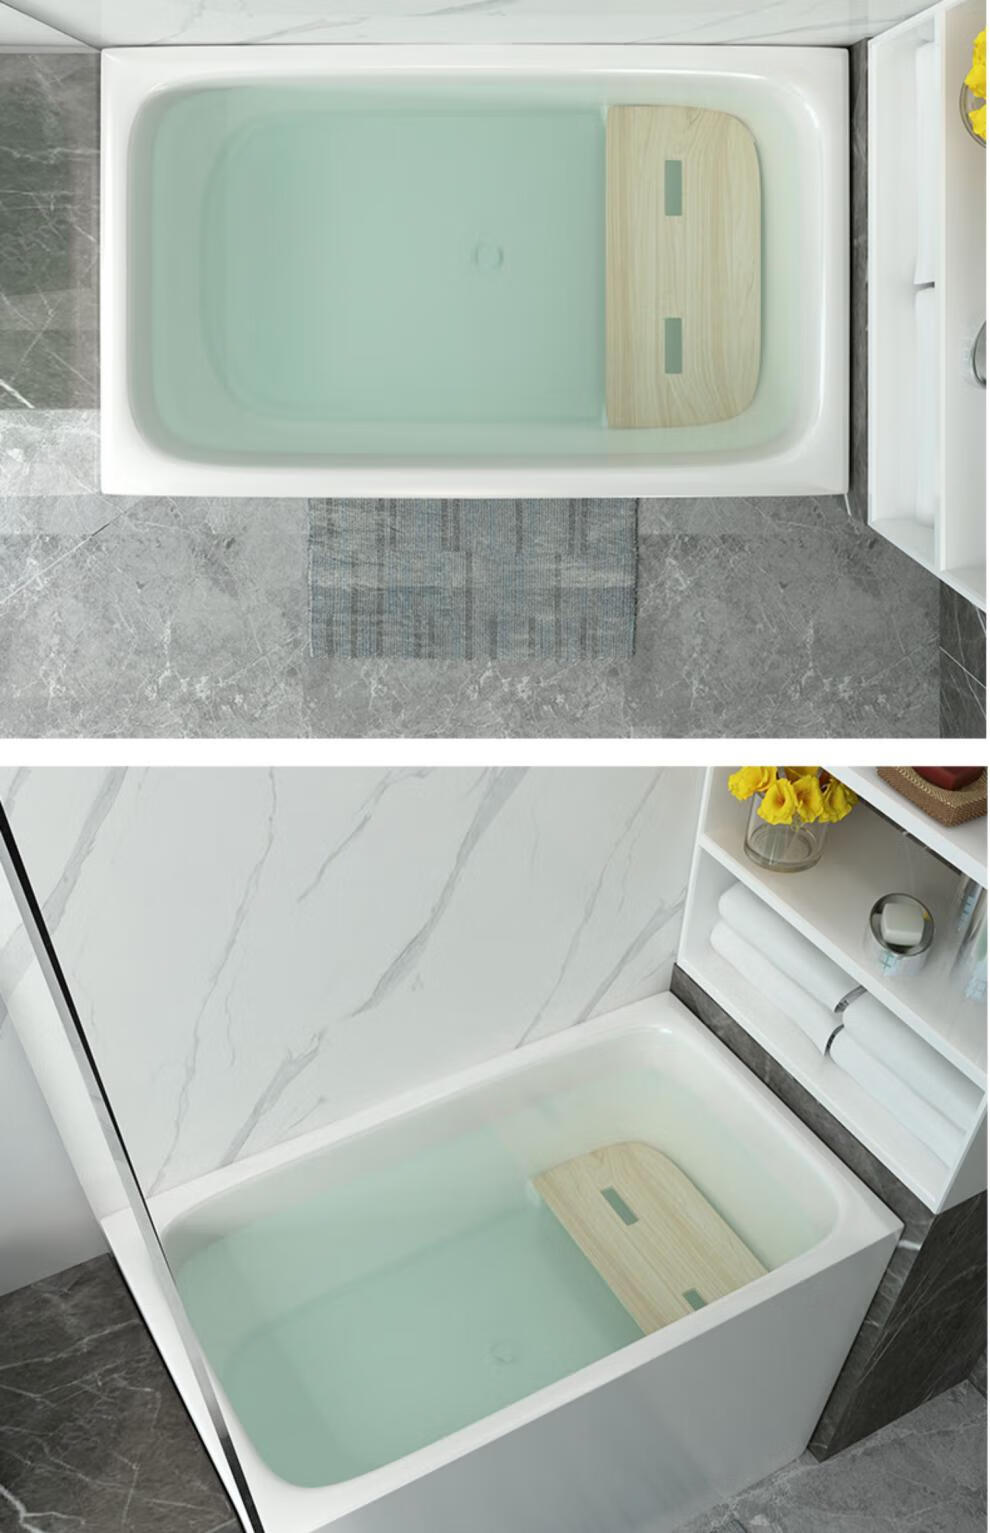 科勒泡泡浴缸使用按键图片